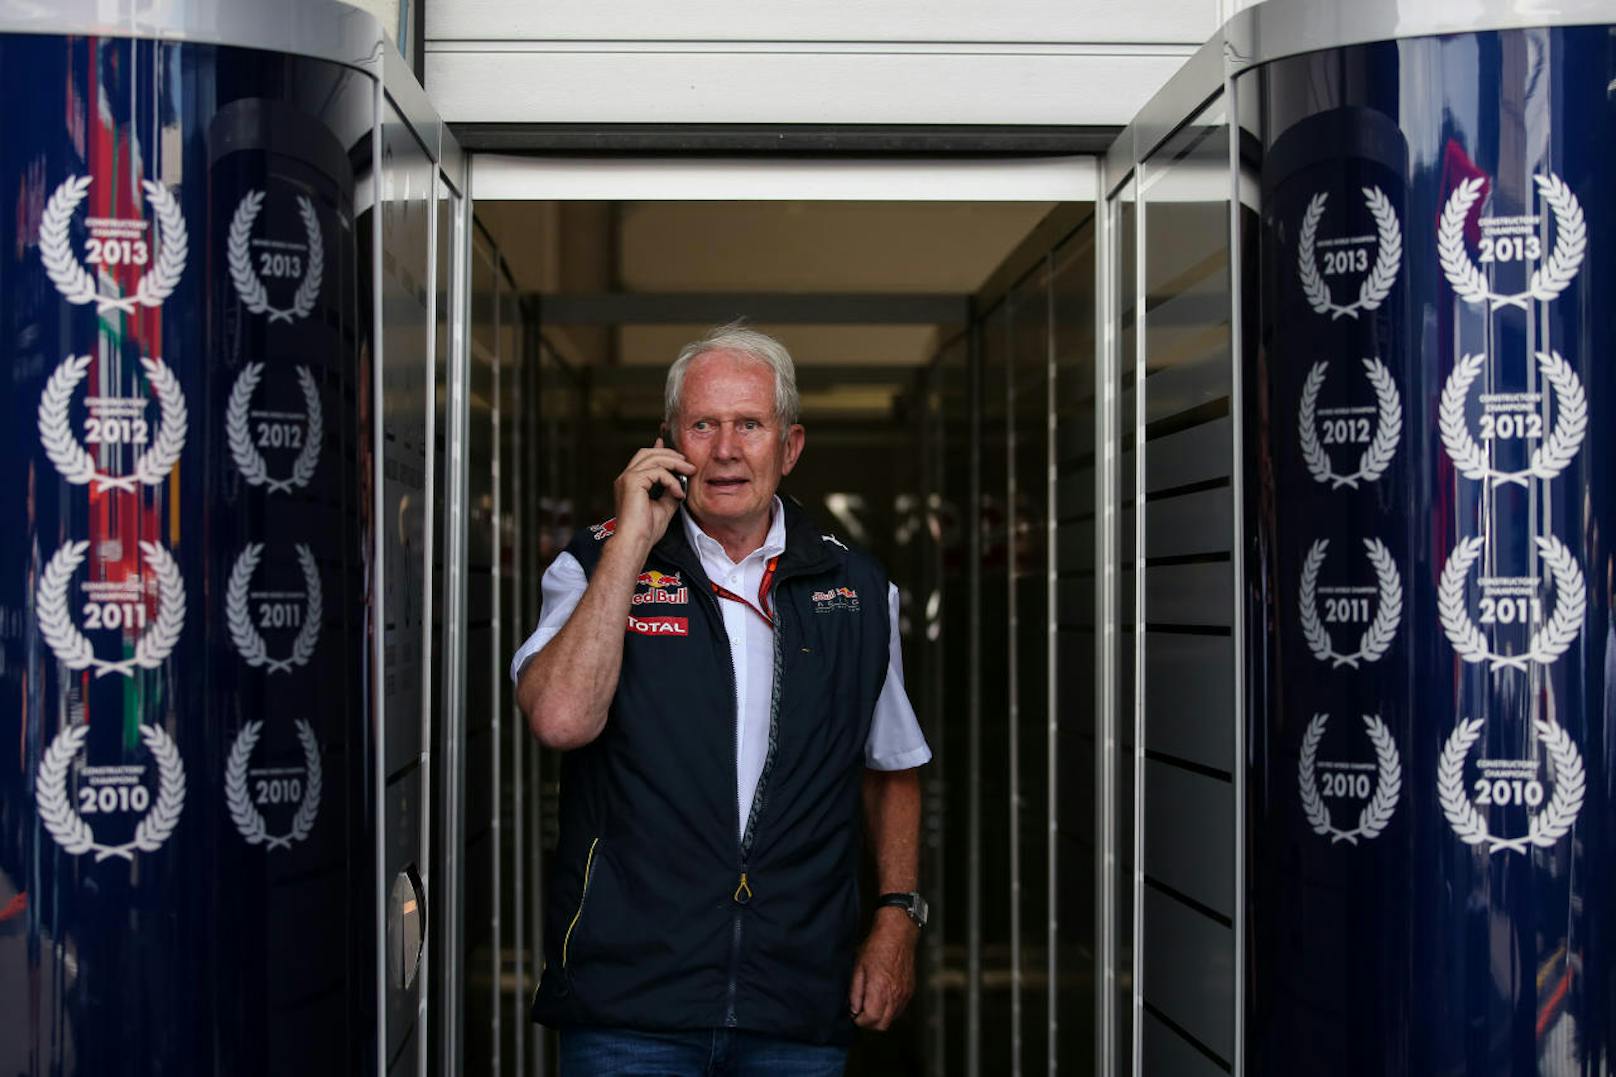 Armer Helmut Marko! Der Red-Bull-Motorsportchef wurde von "Ö3-Callboy" Gernot Kulis am Telefon ordentlich hereingelegt. Angesichts seiner Erfolge kann er den Spott aber leicht ertragen ...